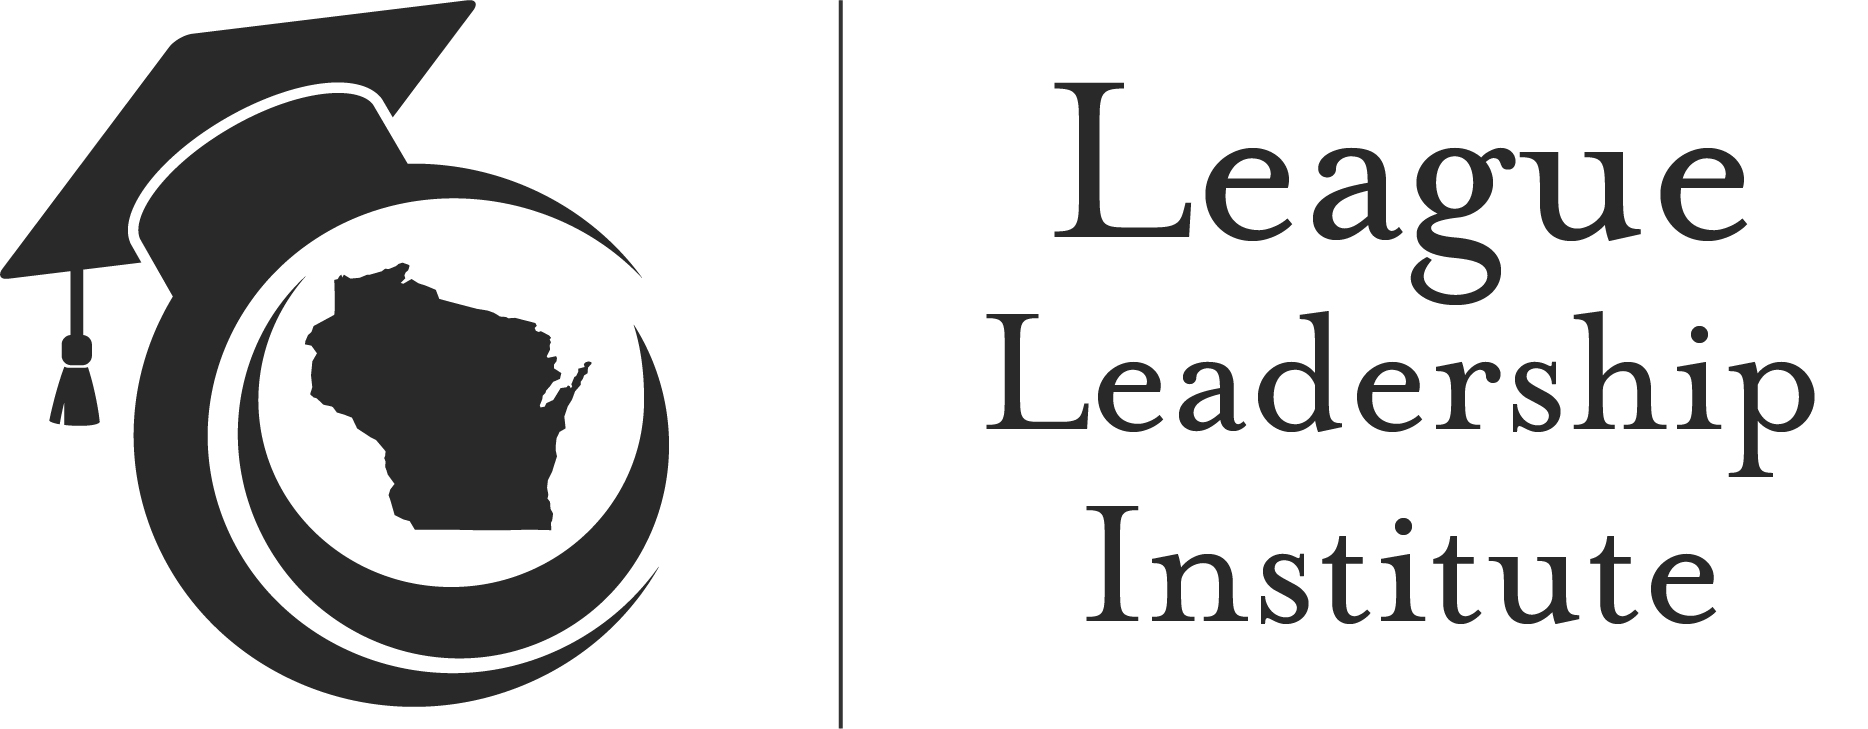 League Leadership Institute